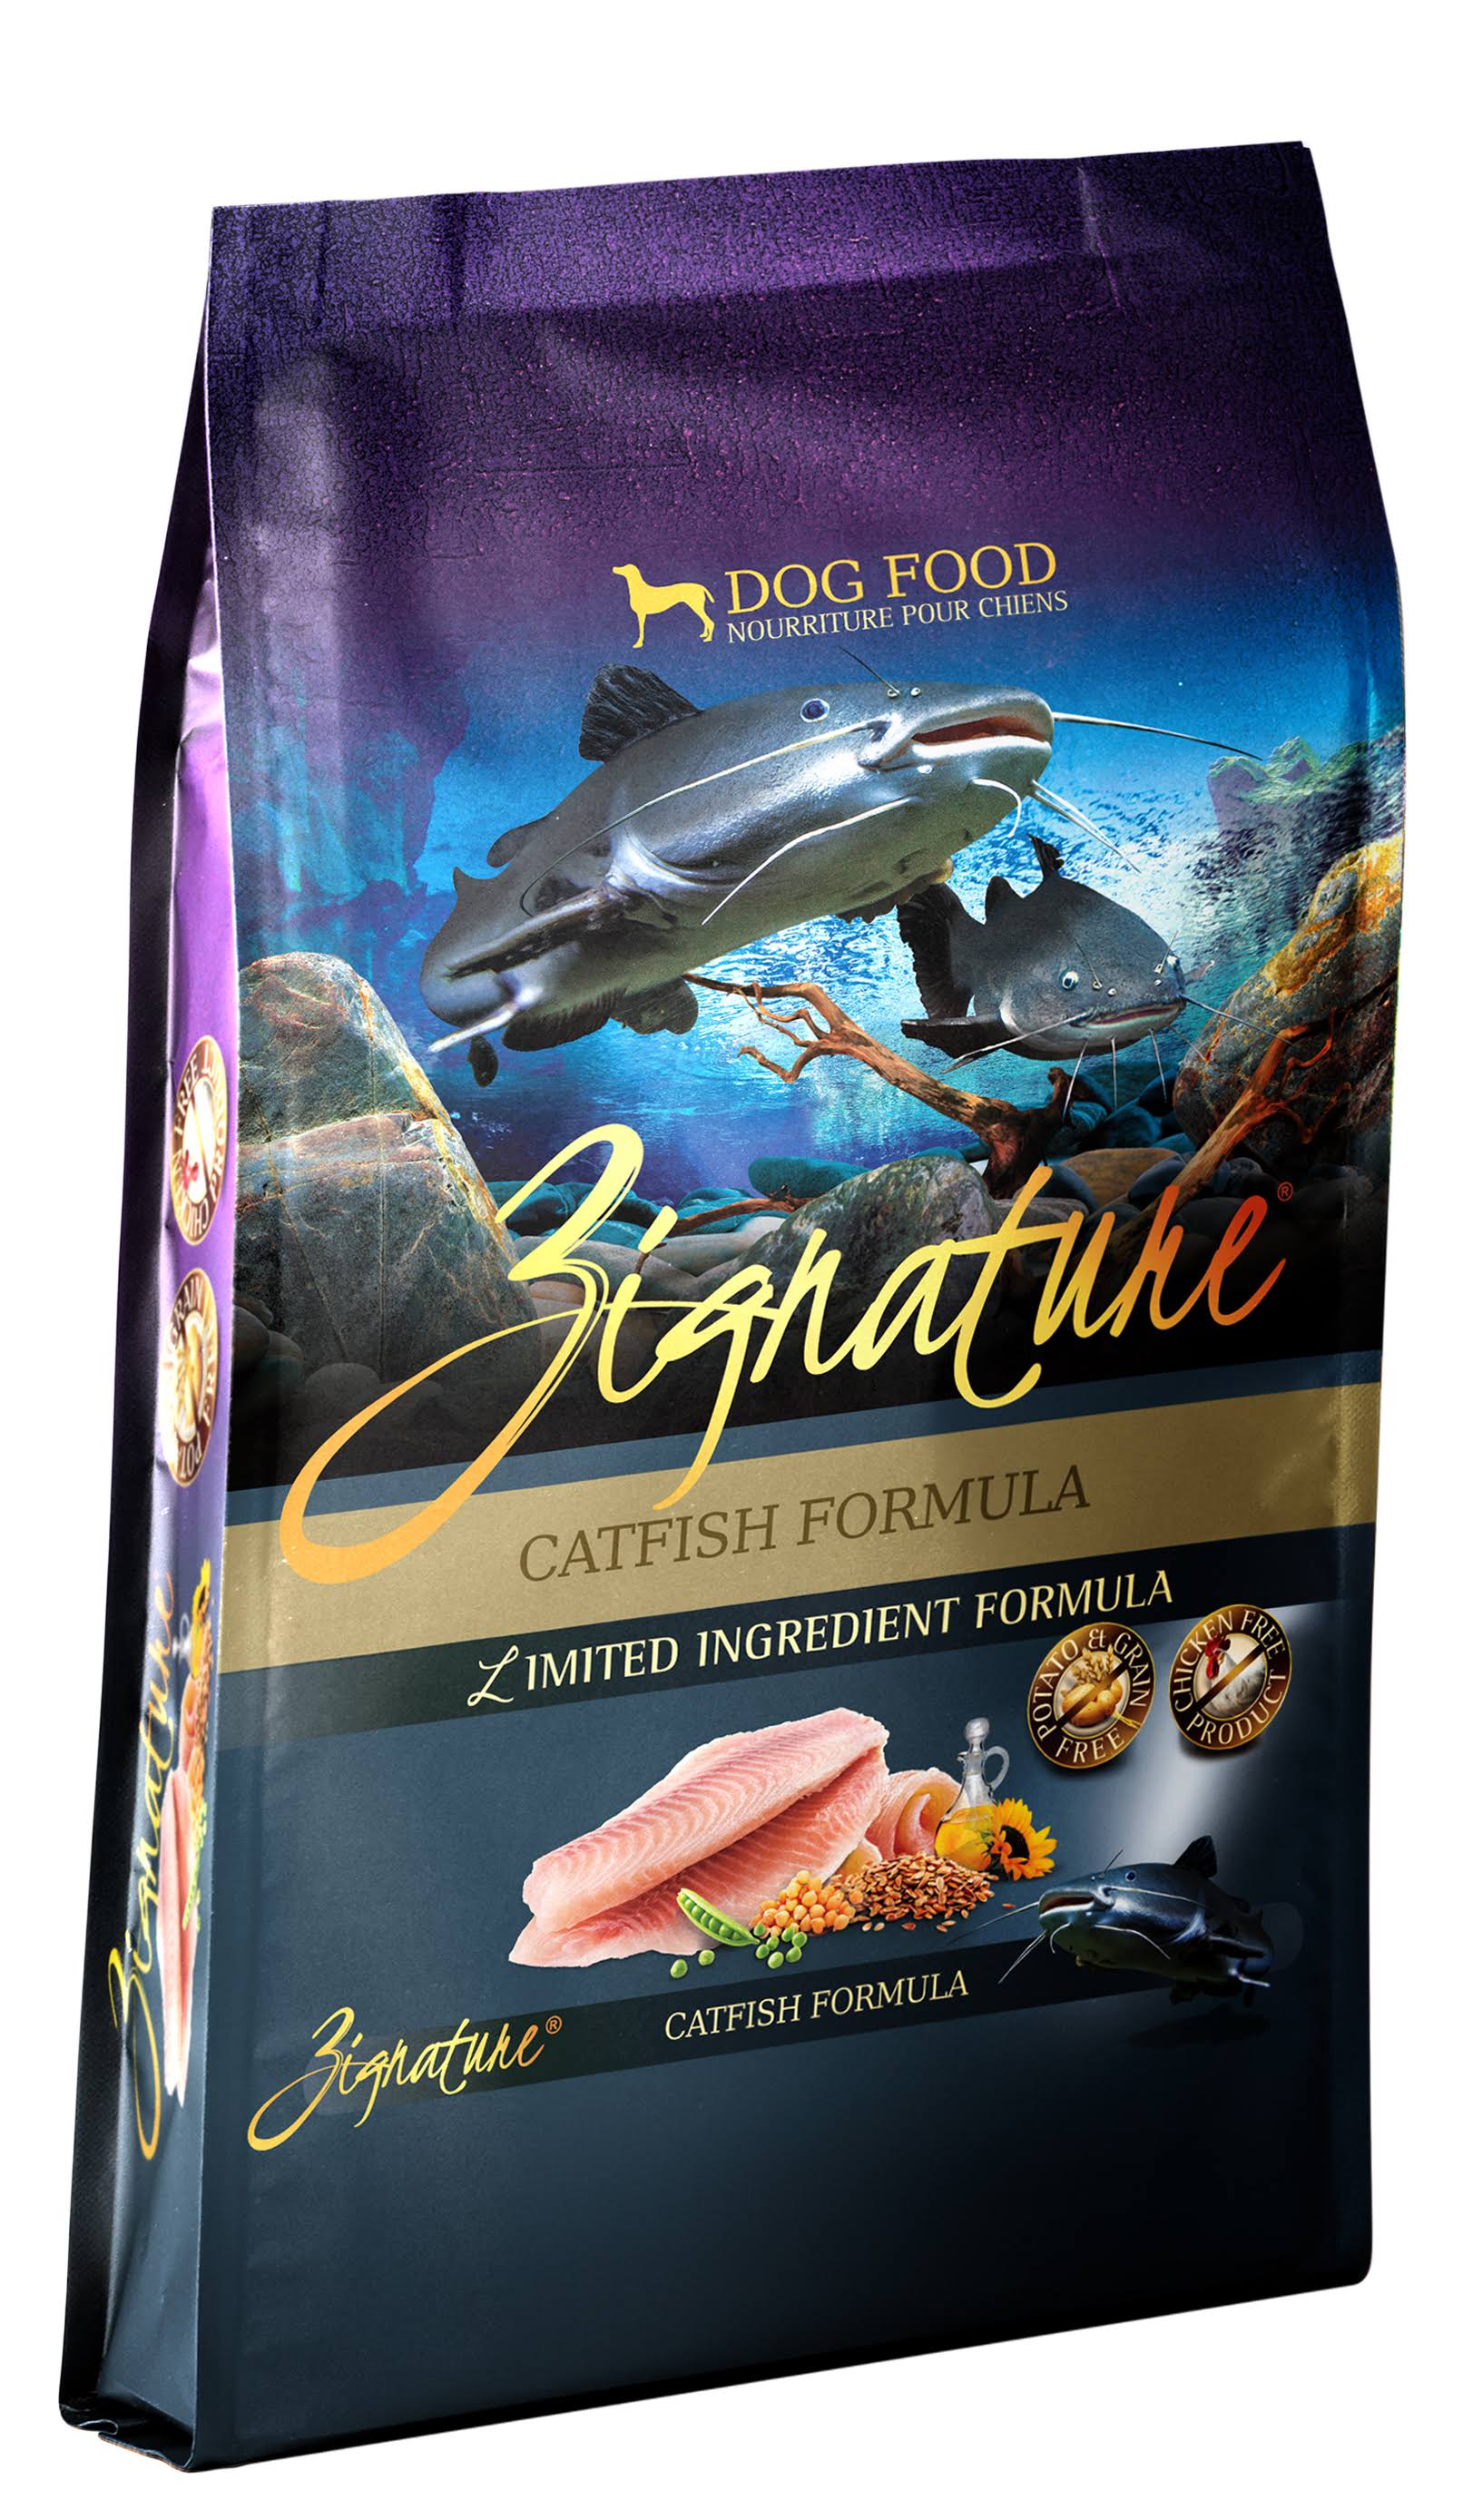 Zignature Limited Ingredient Catfish Formula Dry Dog Food